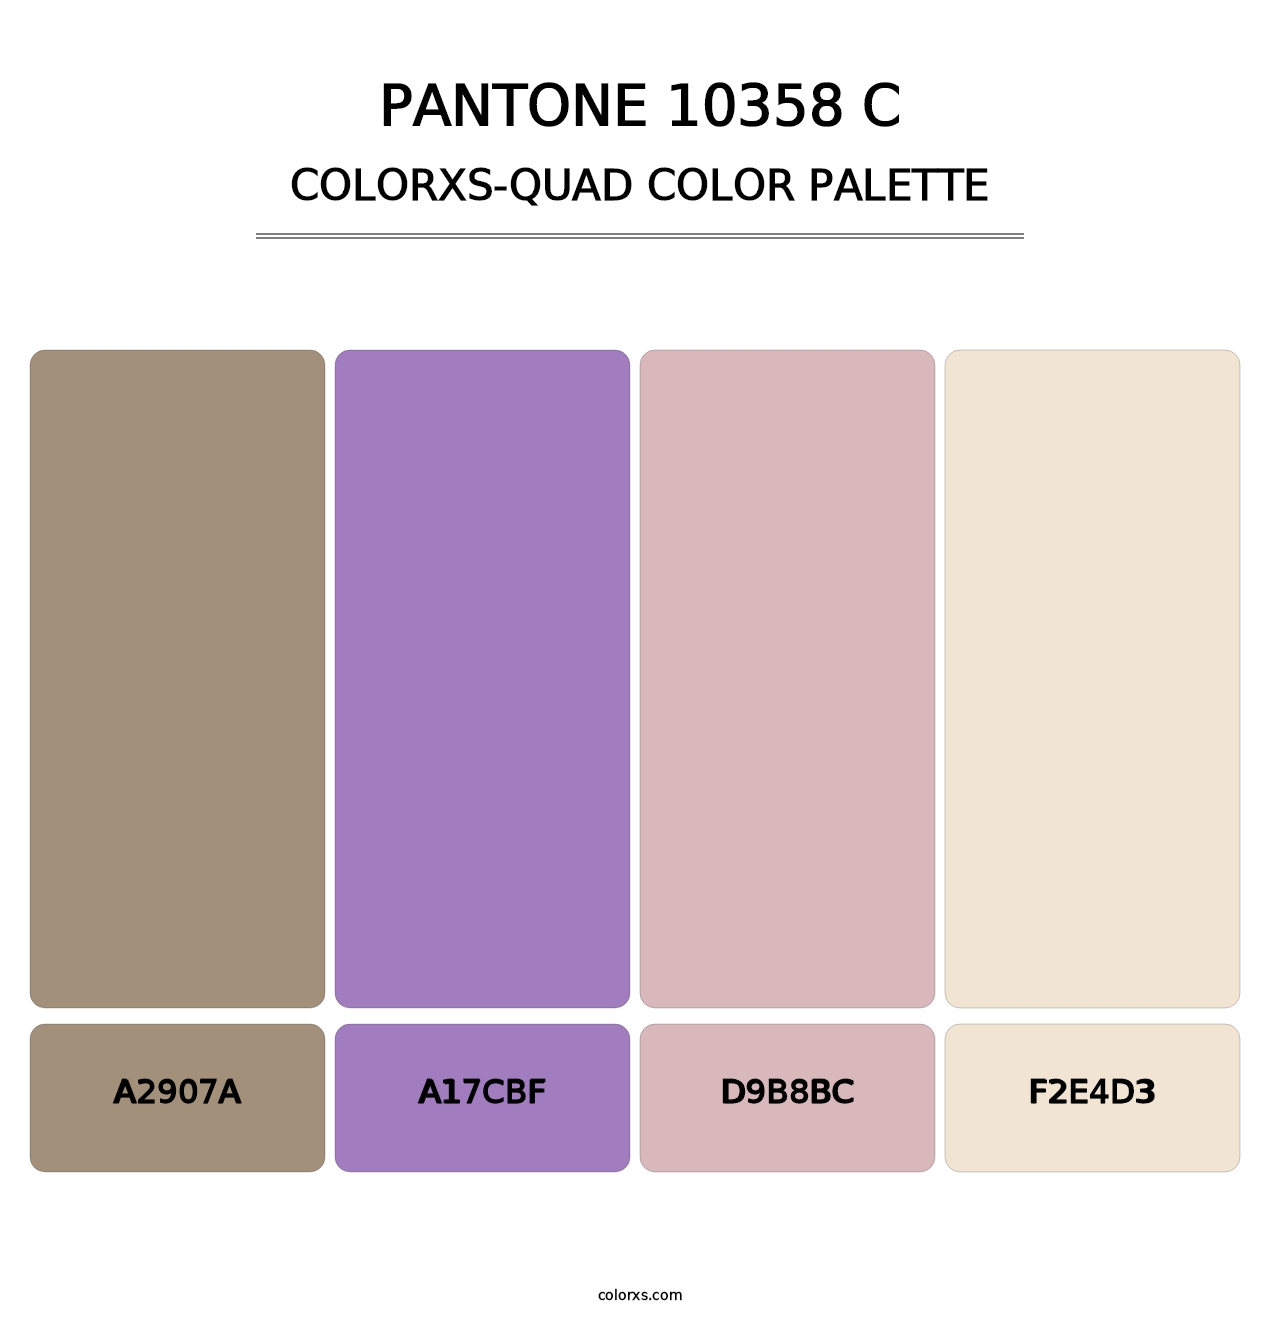 PANTONE 10358 C - Colorxs Quad Palette